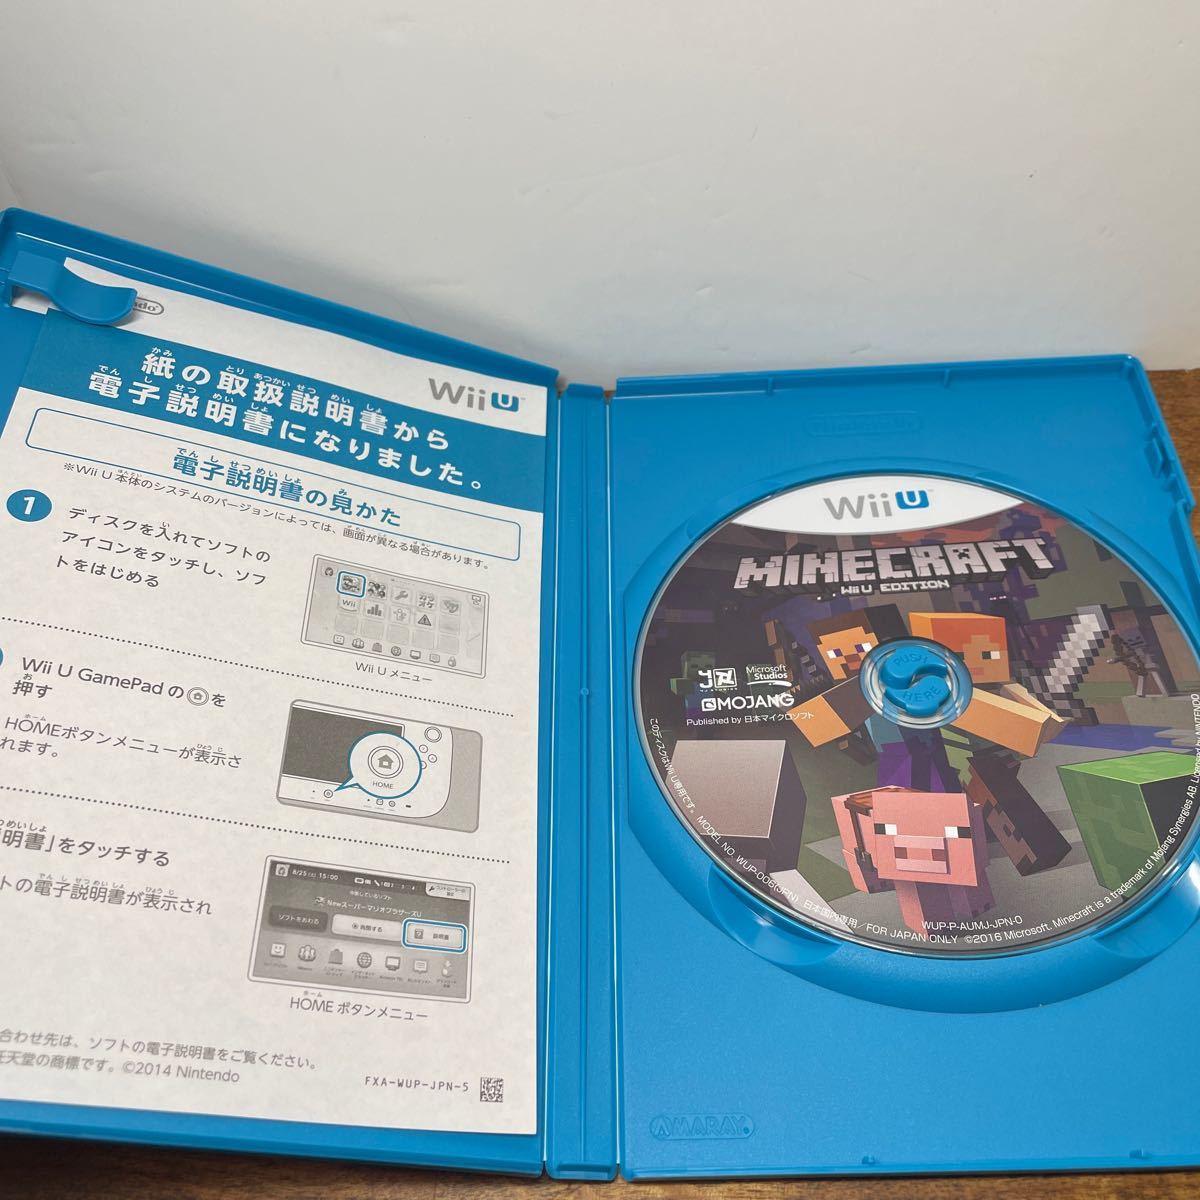 マインクラフト WiiU EDITION